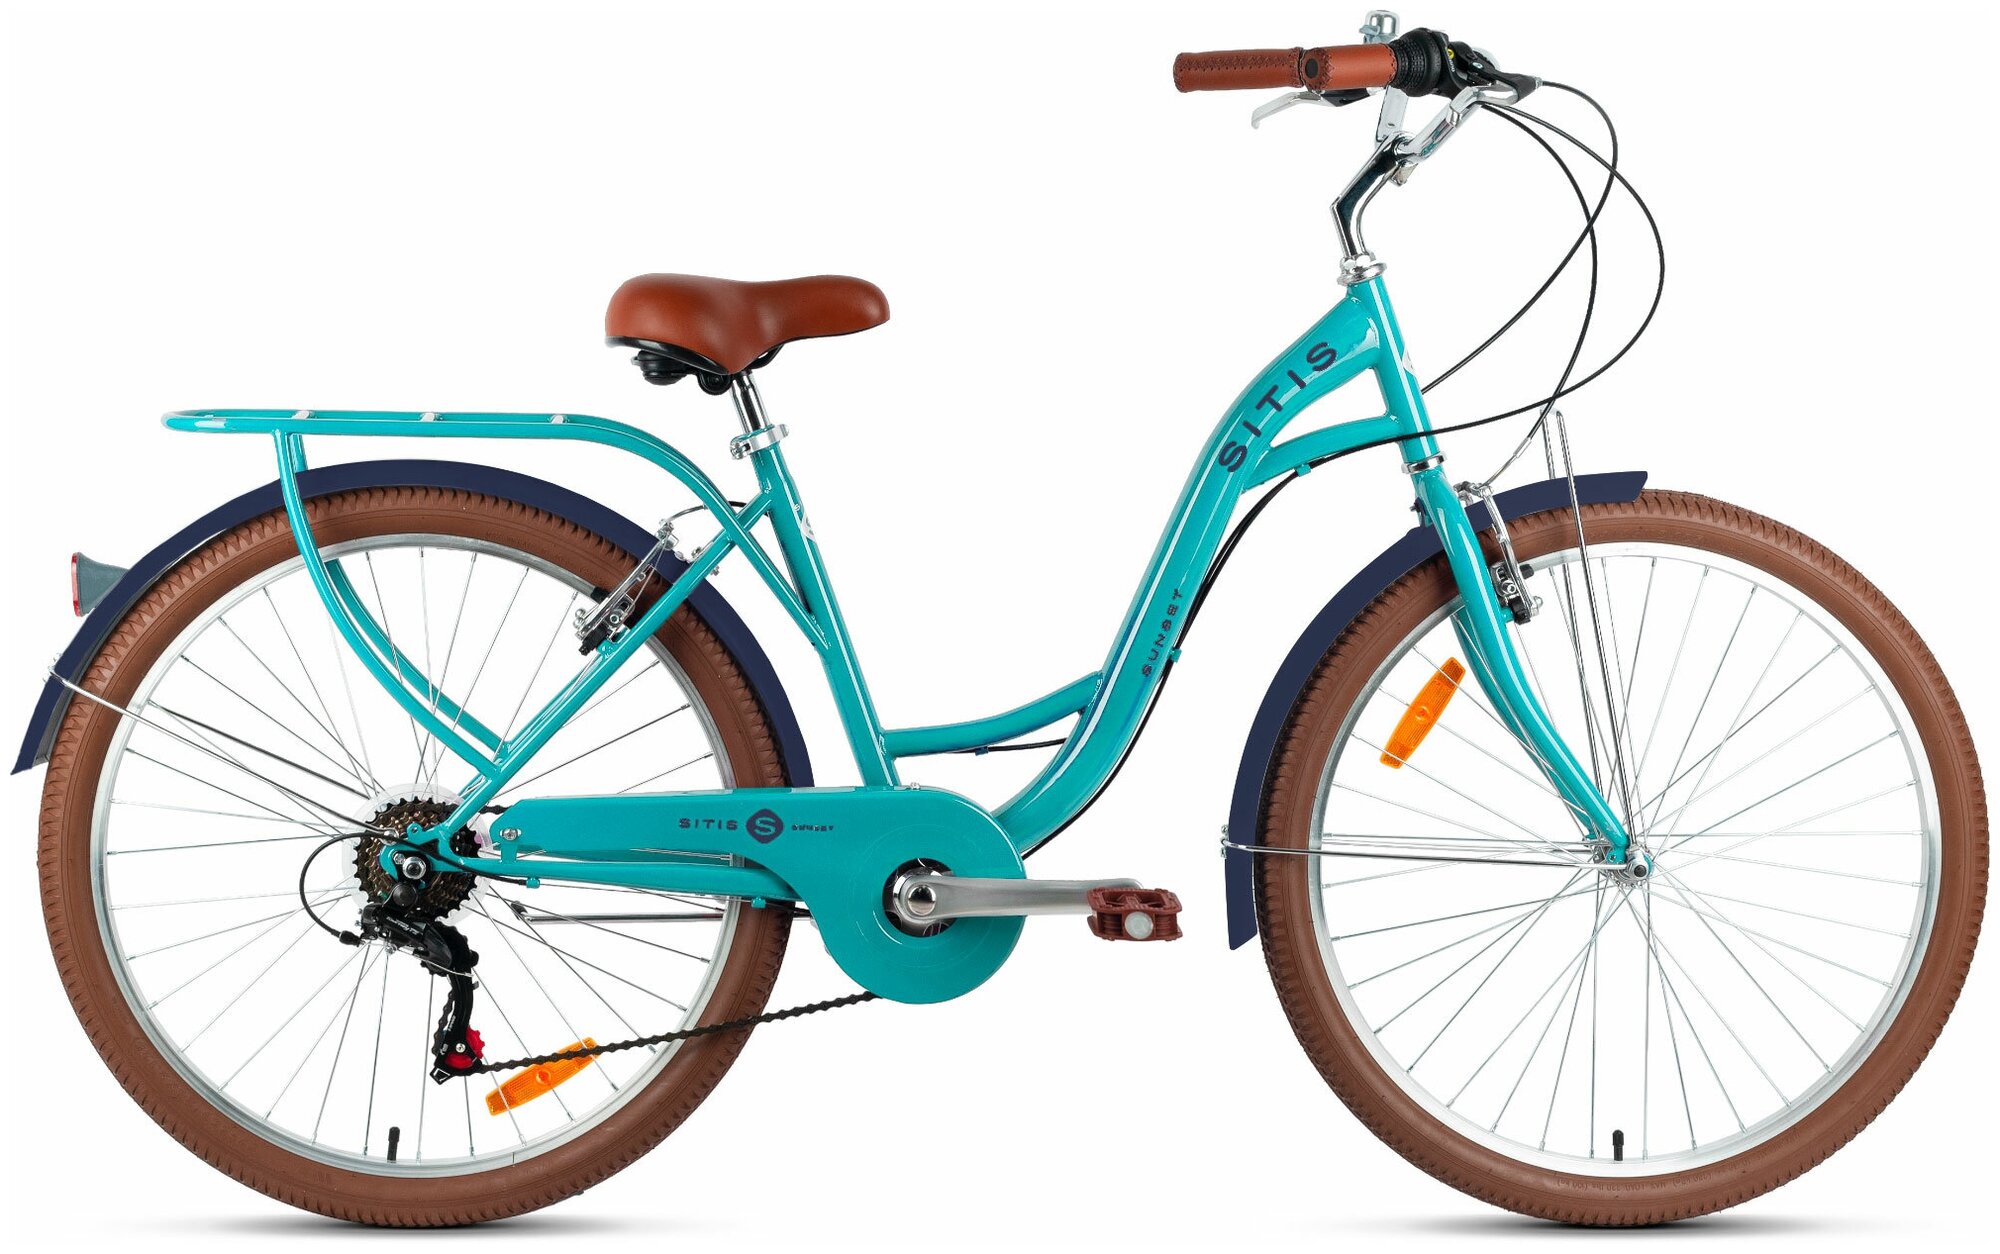 Велосипед городской SITIS SUNSET 26" (2022), ригид, взрослый, женский, стальная рама, оборудование Shimano Tourney, 7 скоростей, ободные тормоза, цвет Turquoise, бирюзовый цвет, размер рамы 17", для роста 170-180 см